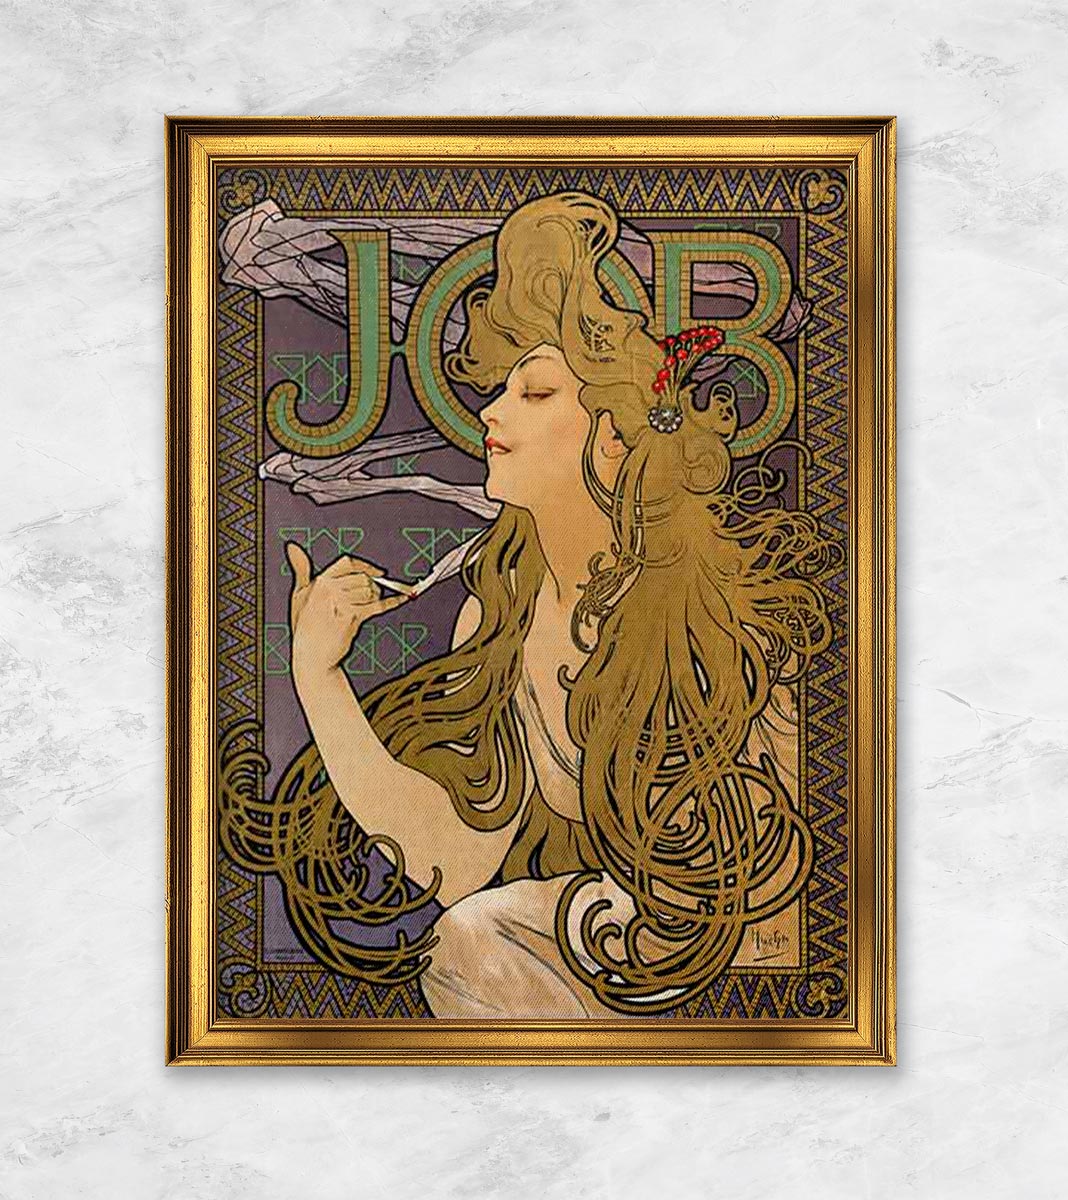 "Plakat für die Zigarettenmarke JOB" | Alphonse Mucha